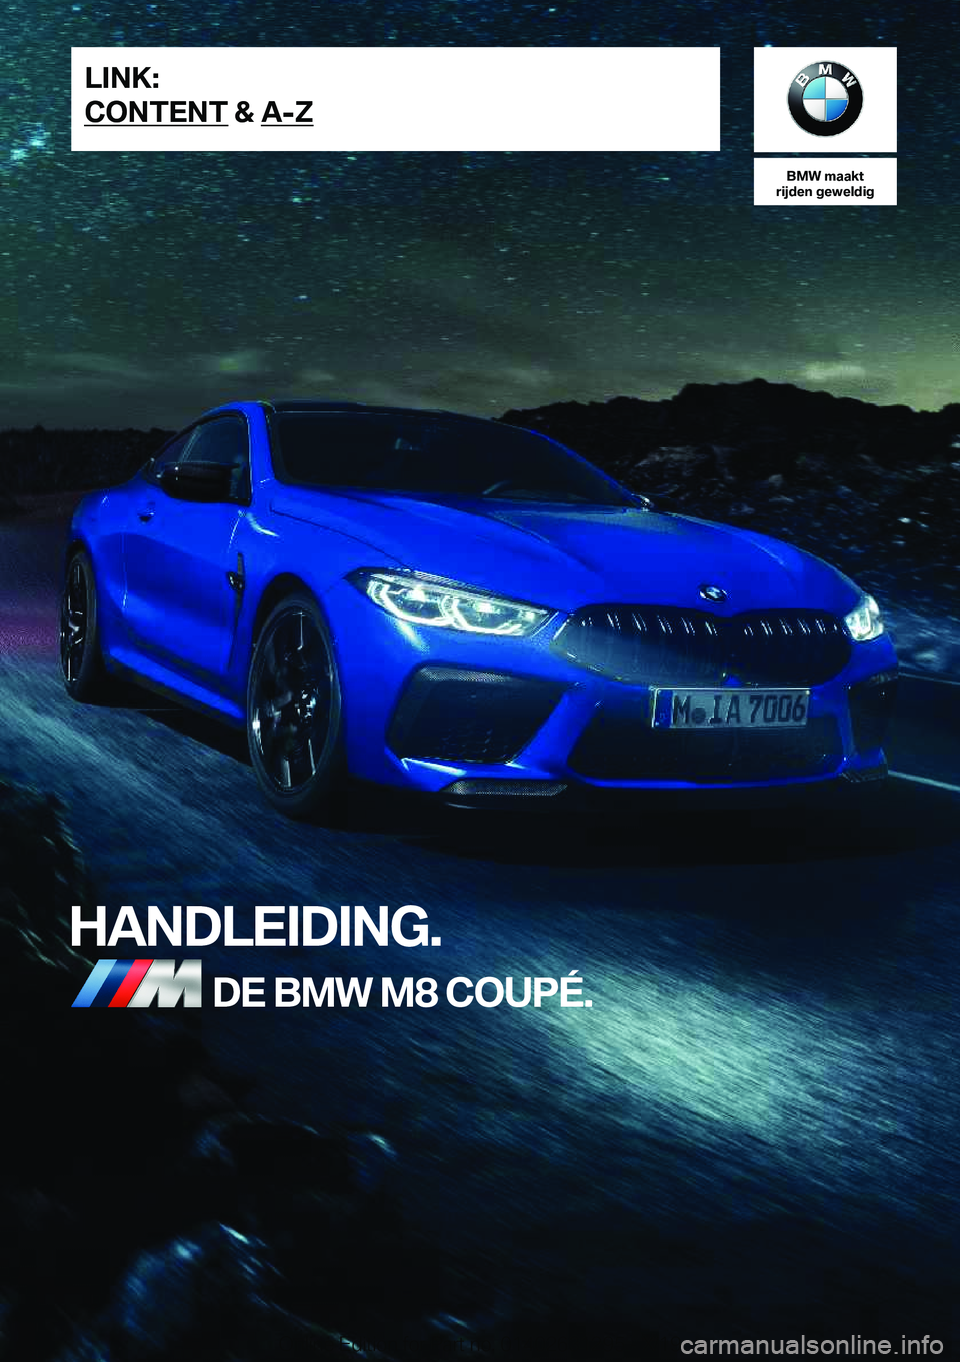 BMW M8 2020  Instructieboekjes (in Dutch) �B�M�W��m�a�a�k�t
�r�i�j�d�e�n��g�e�w�e�l�d�i�g
�H�A�N�D�L�E�I�D�I�N�G�.�D�E��B�M�W��M�8��C�O�U�P�